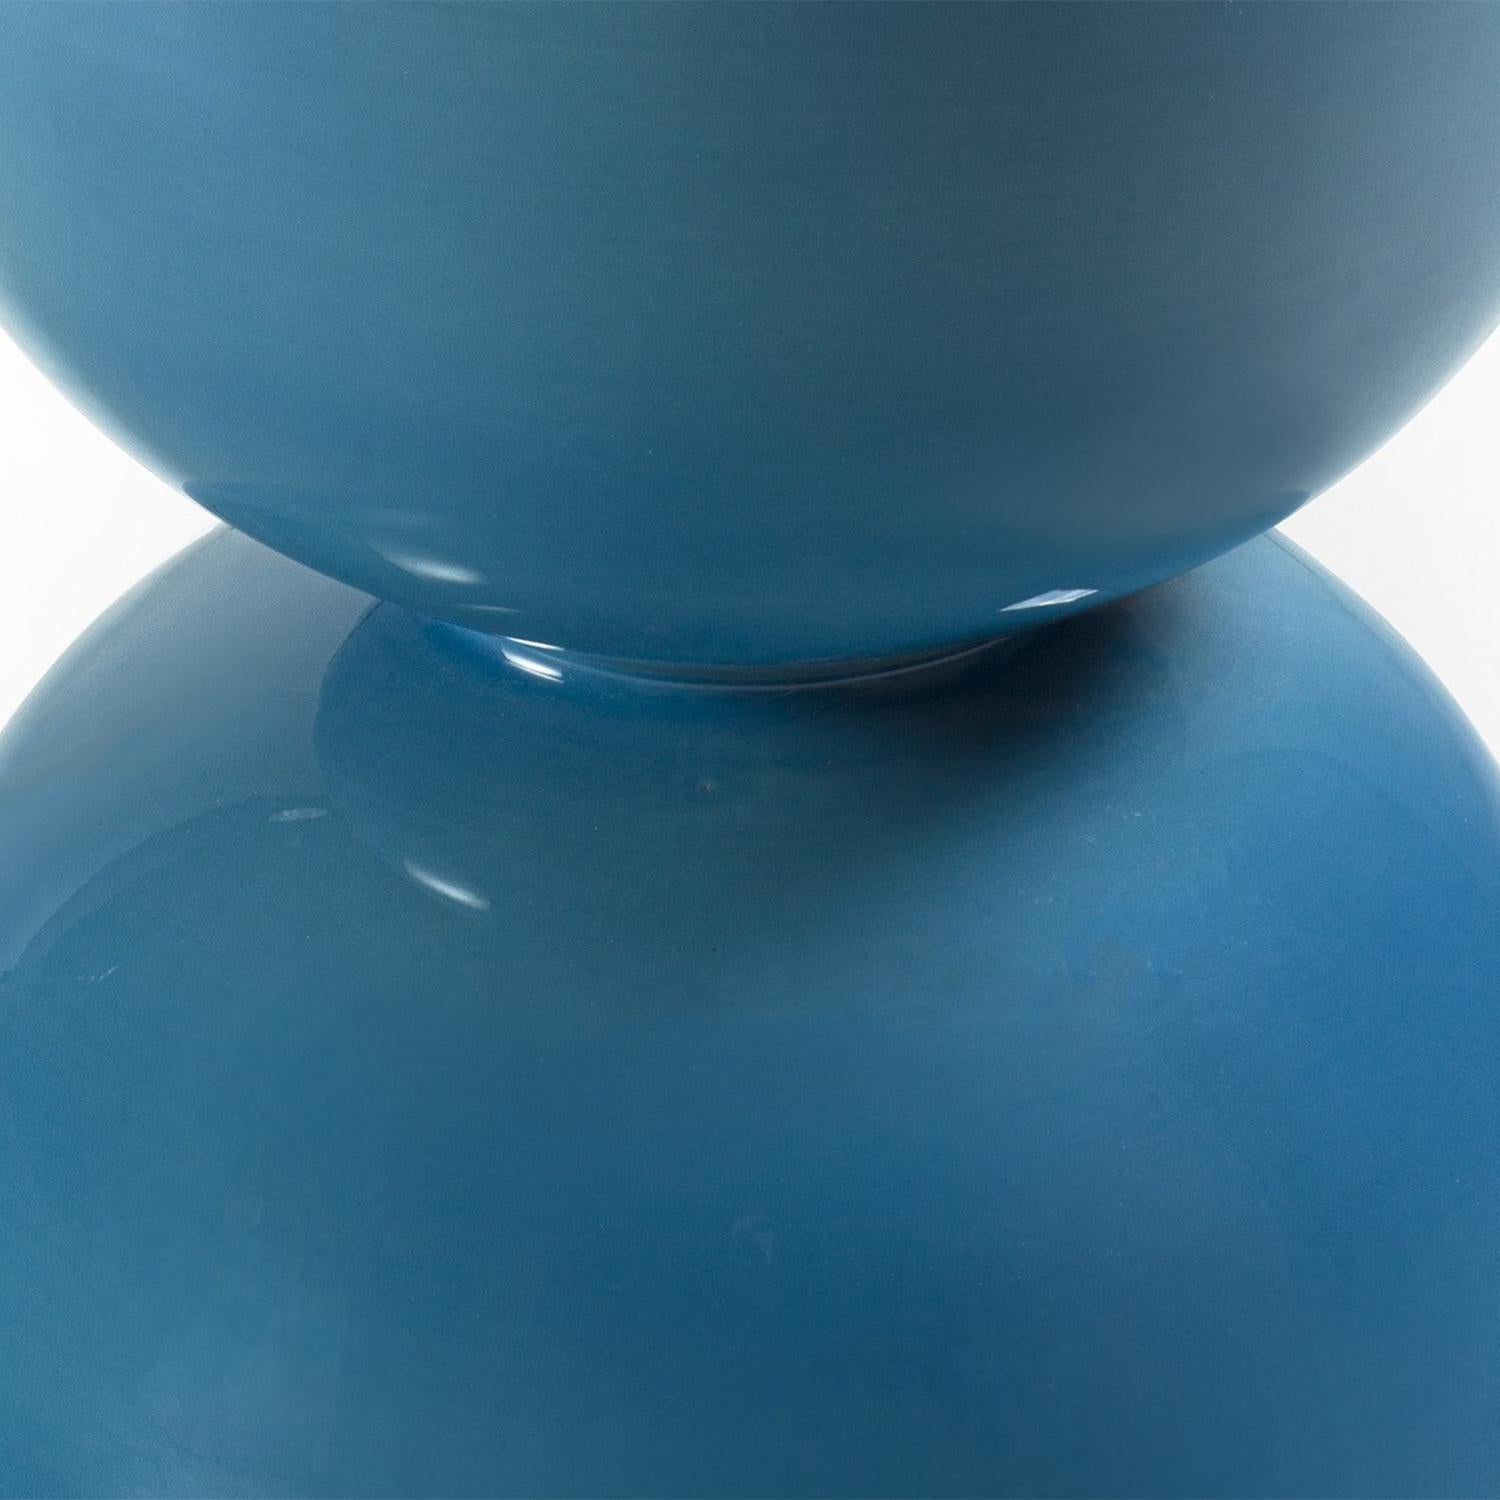 Enameled Spheres Blue Stool For Sale